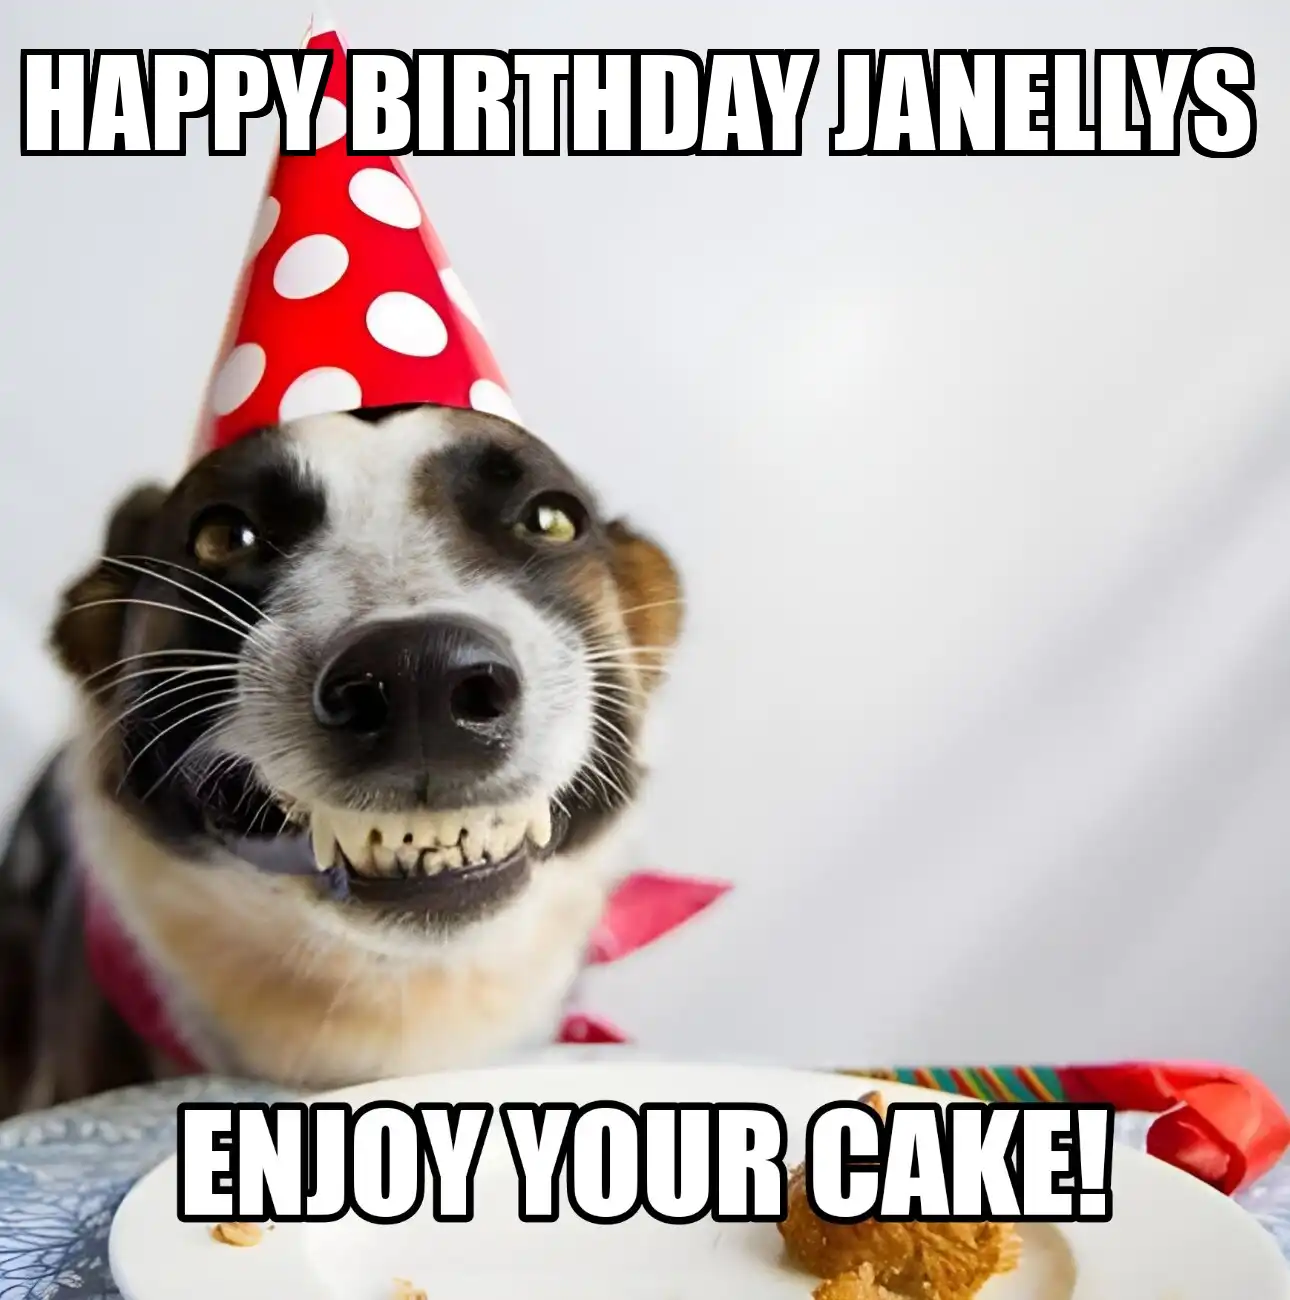 Happy Birthday Janellys Enjoy Your Cake Dog Meme